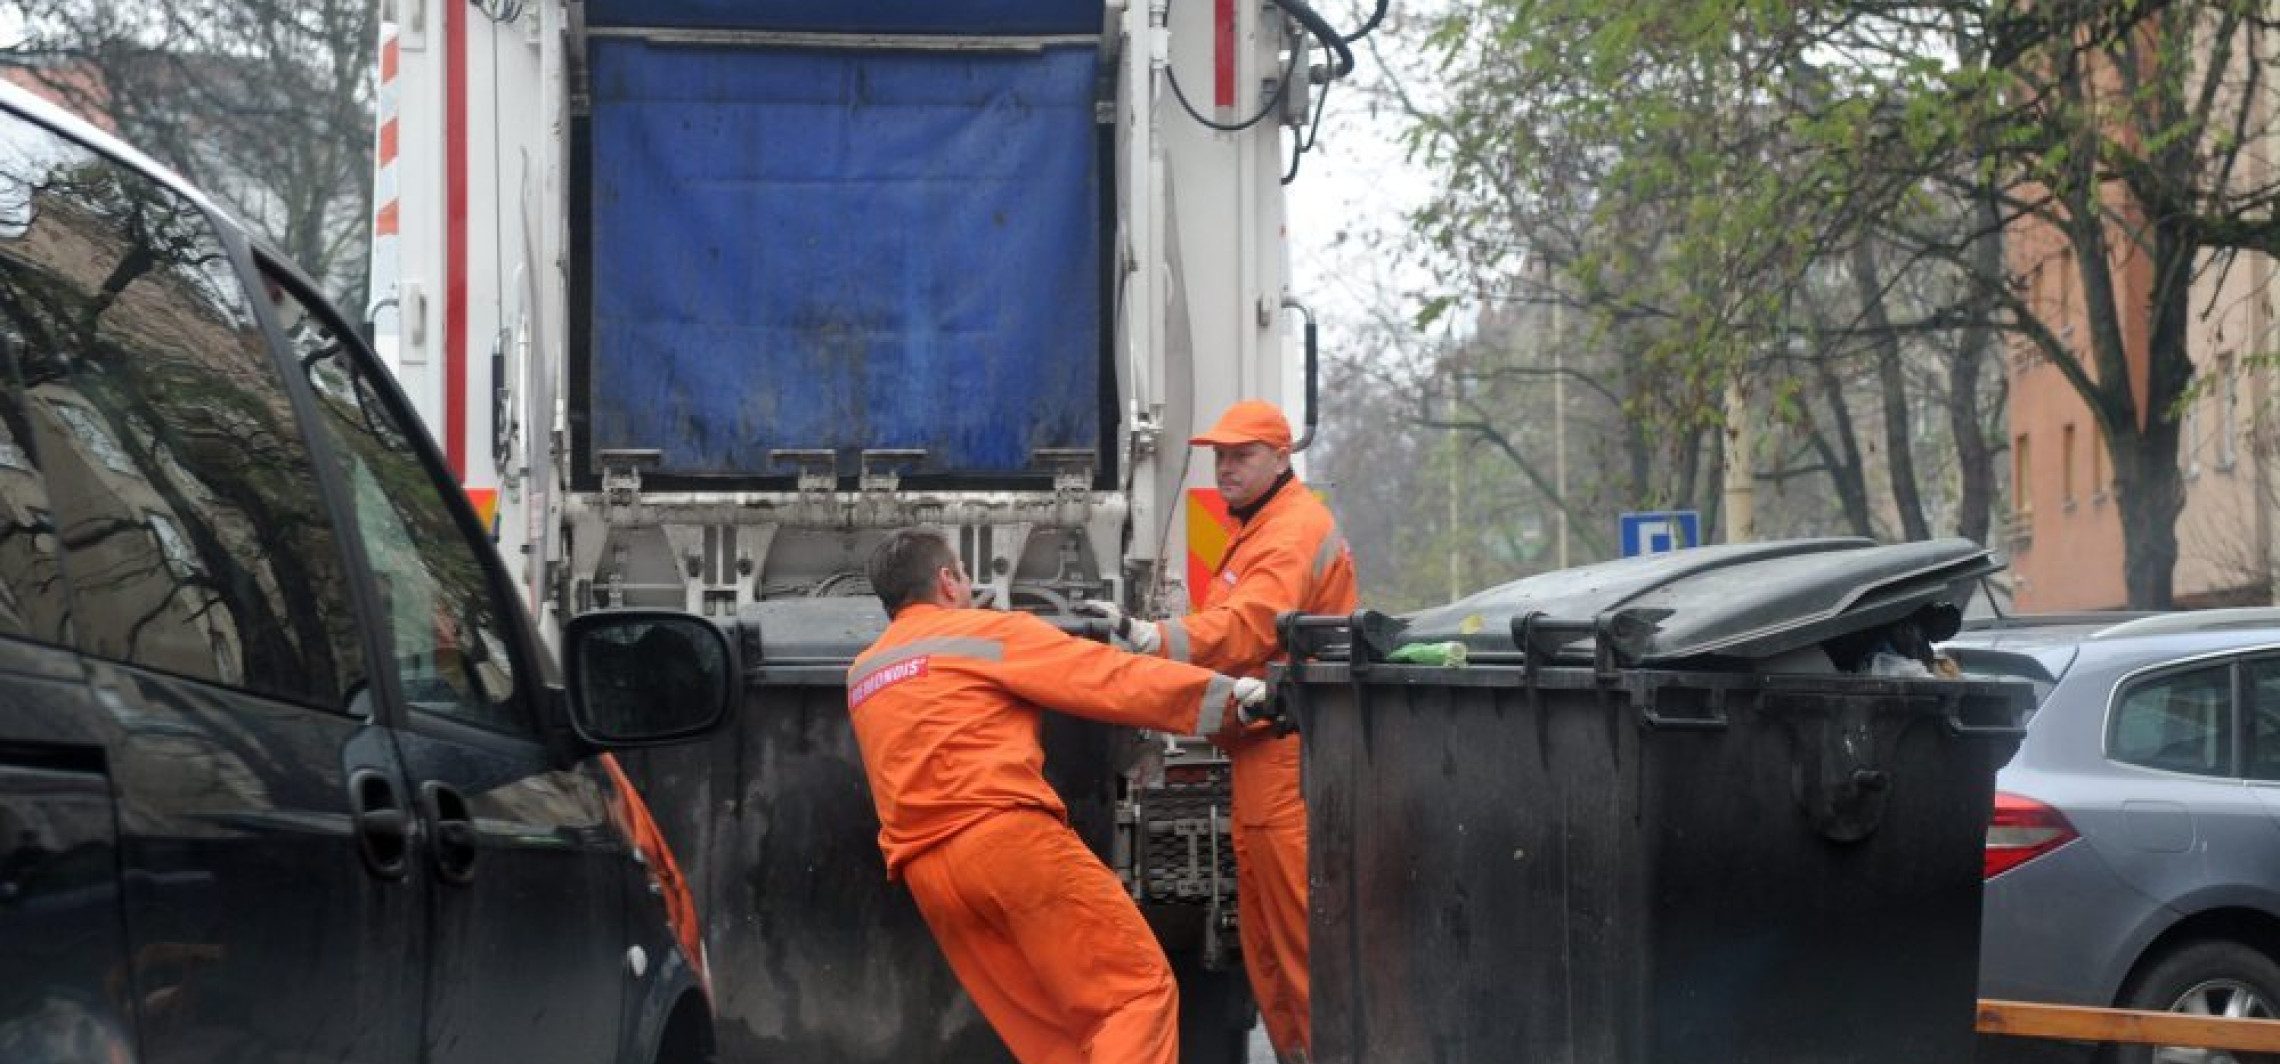 Kraj - Opłaty za wywóz śmieci wzrosły w ostatnim roku o ponad 30 proc.